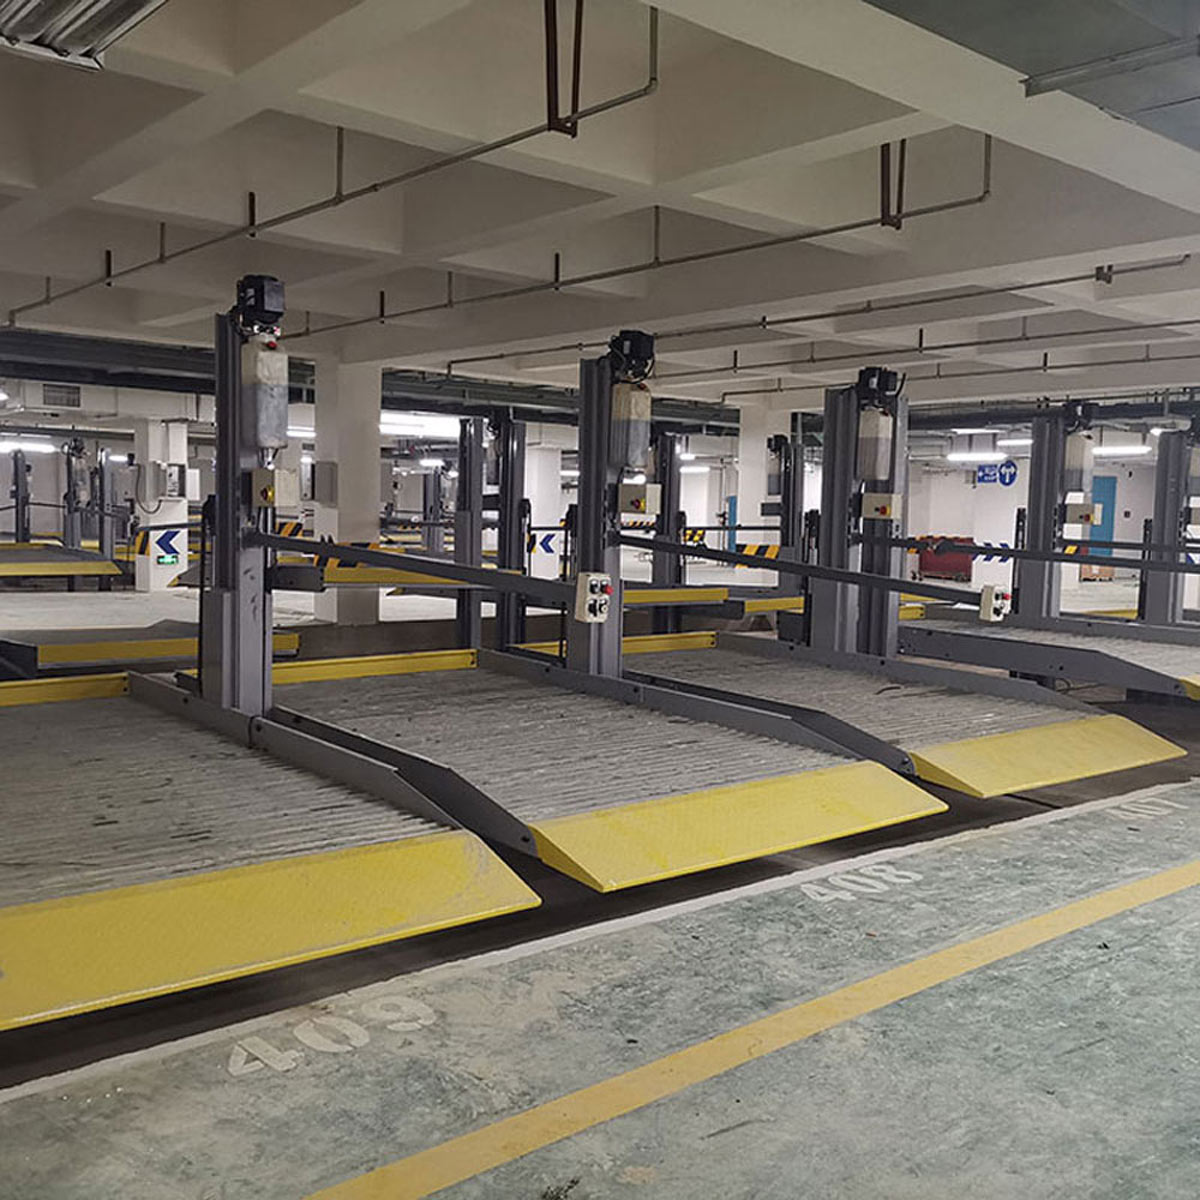 麻栗坡國內停車場的幾種主要類型